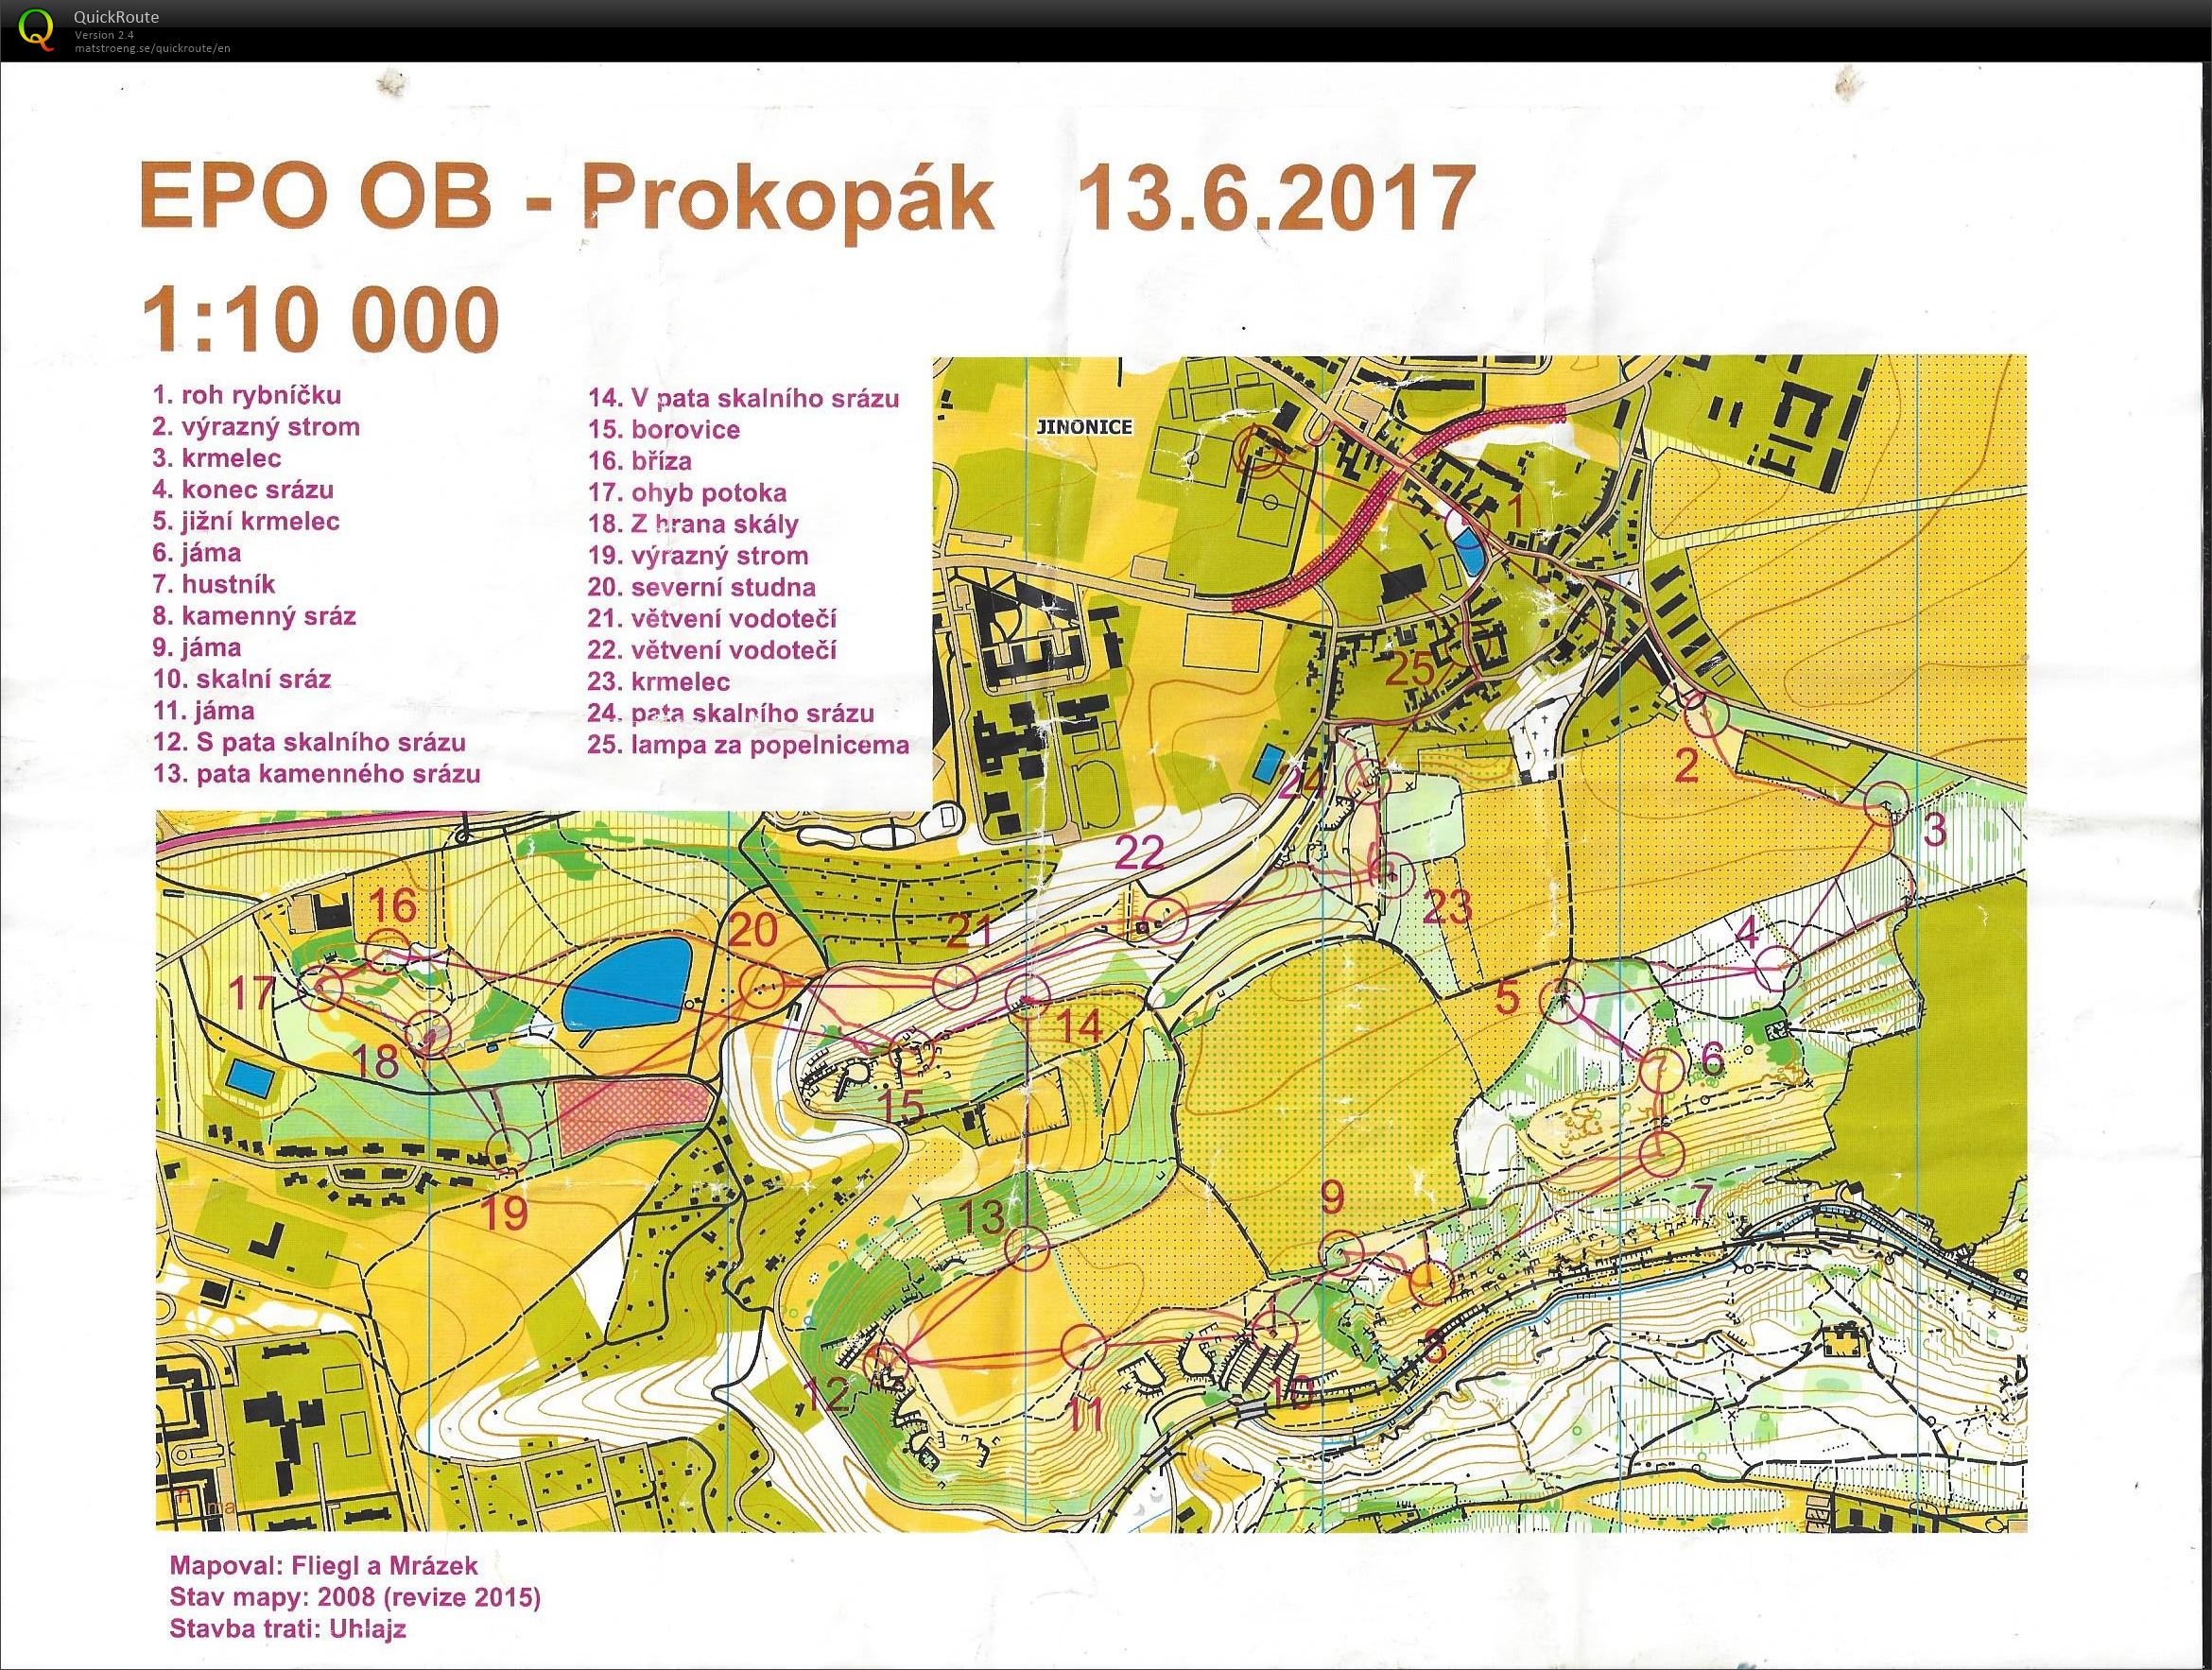 EPO OB - Prokopák (13.06.2017)